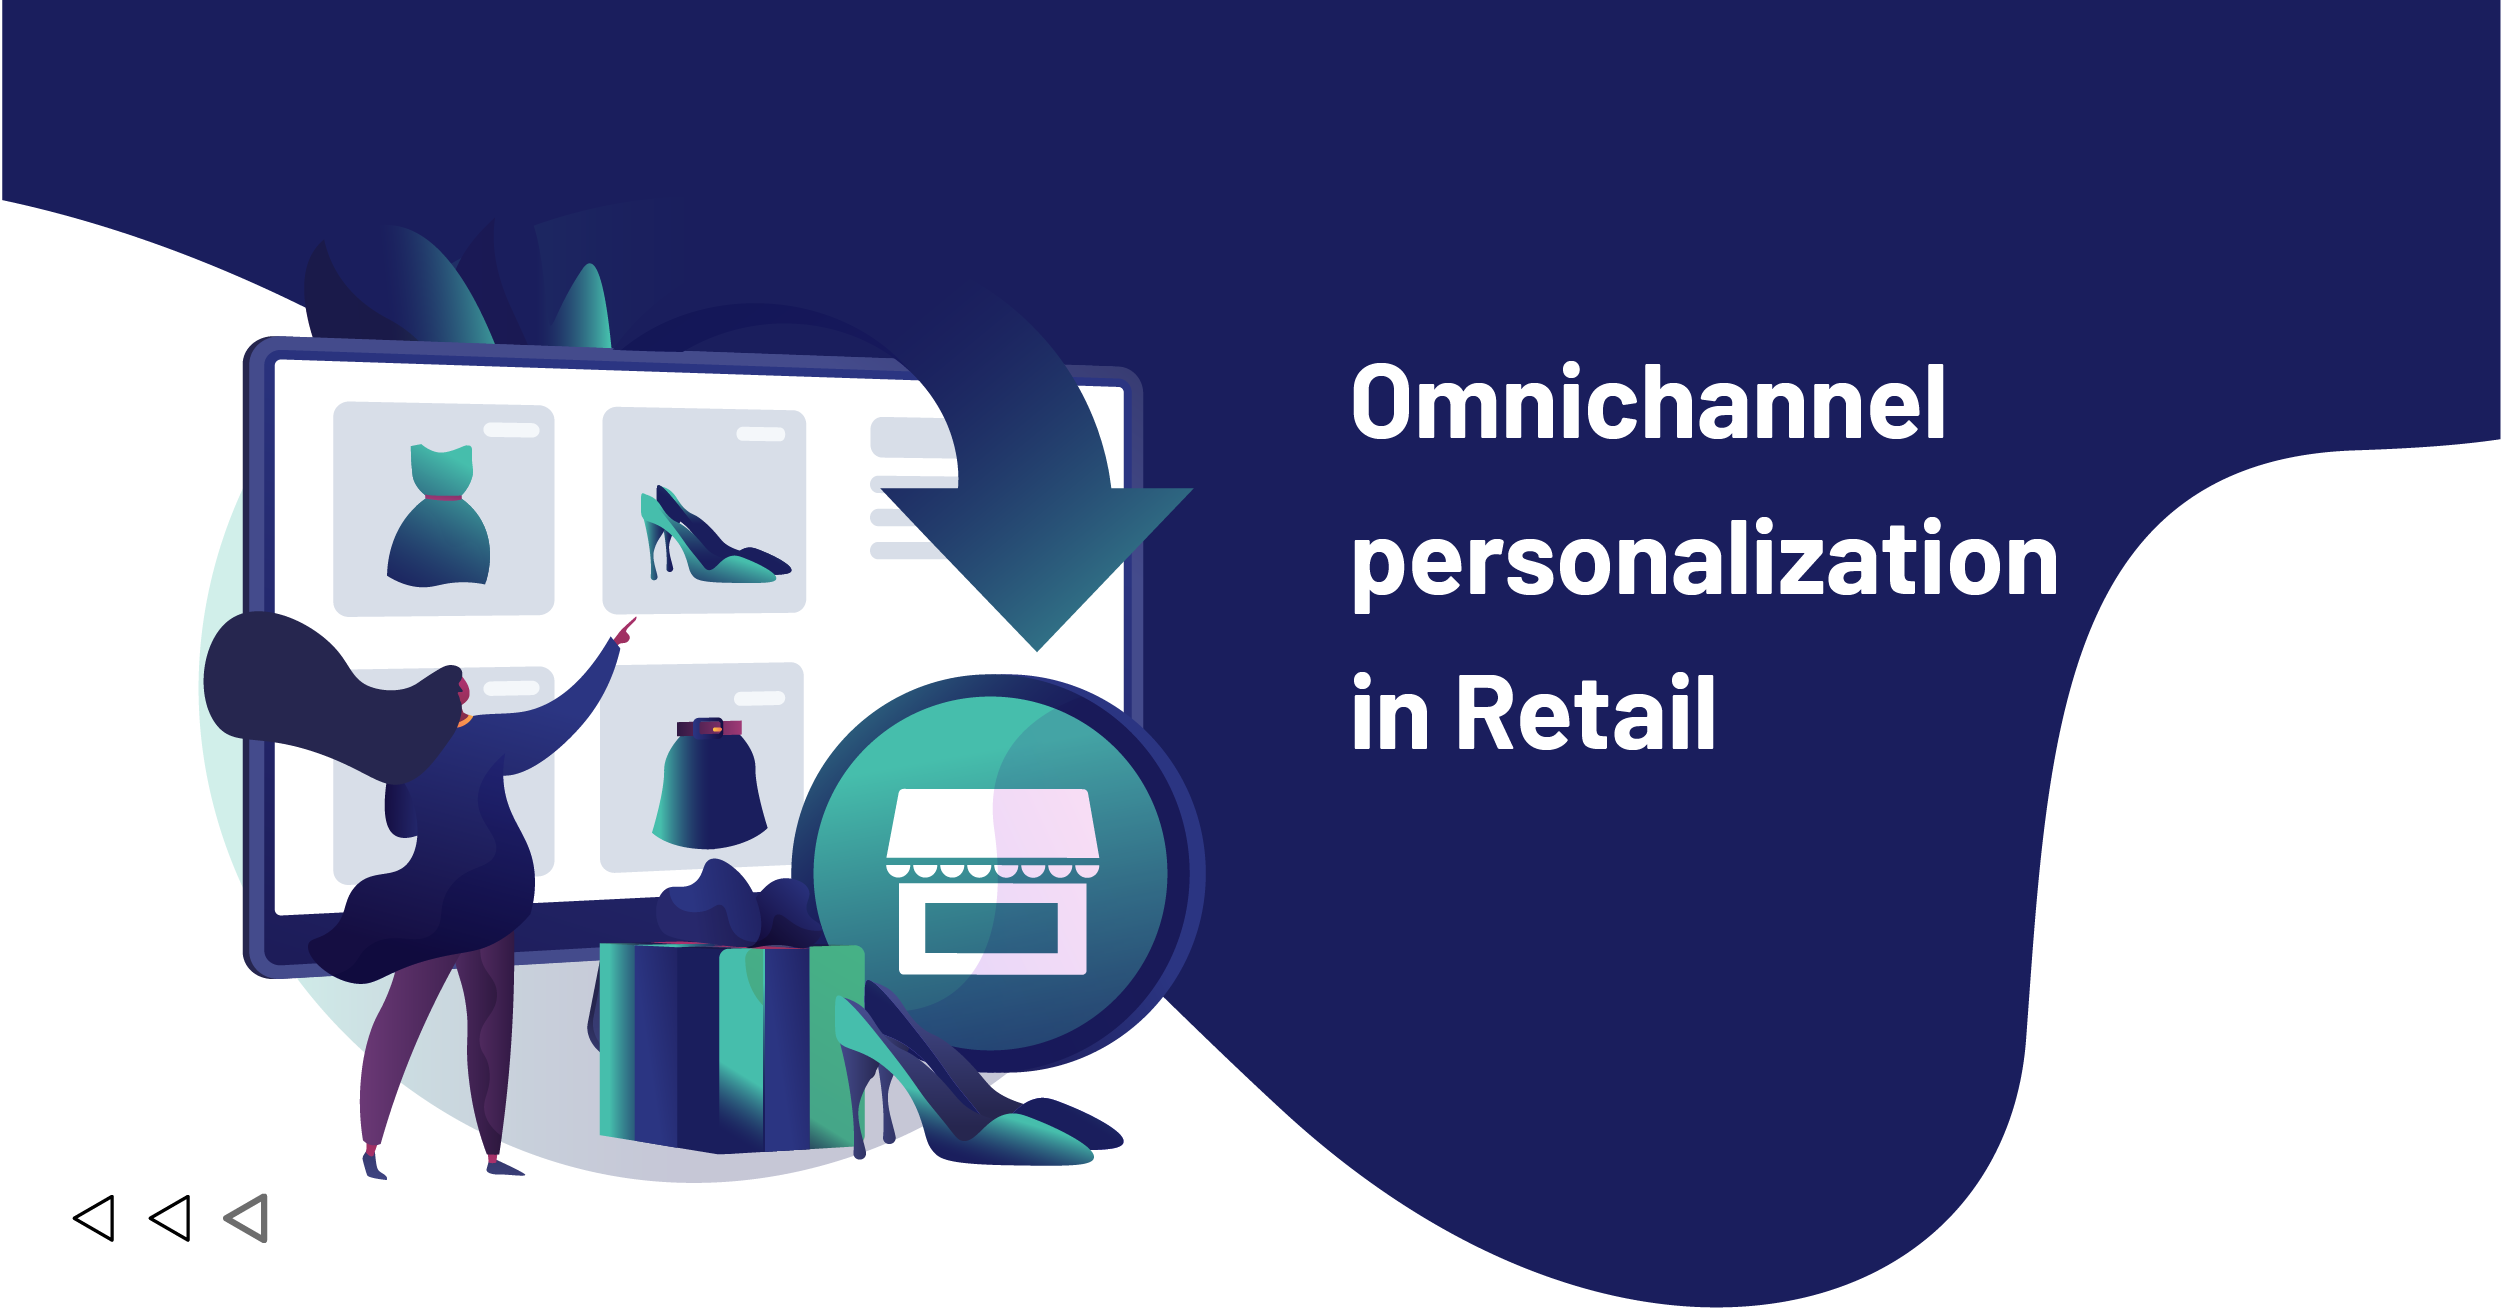 Omnichannel personalization in Retail